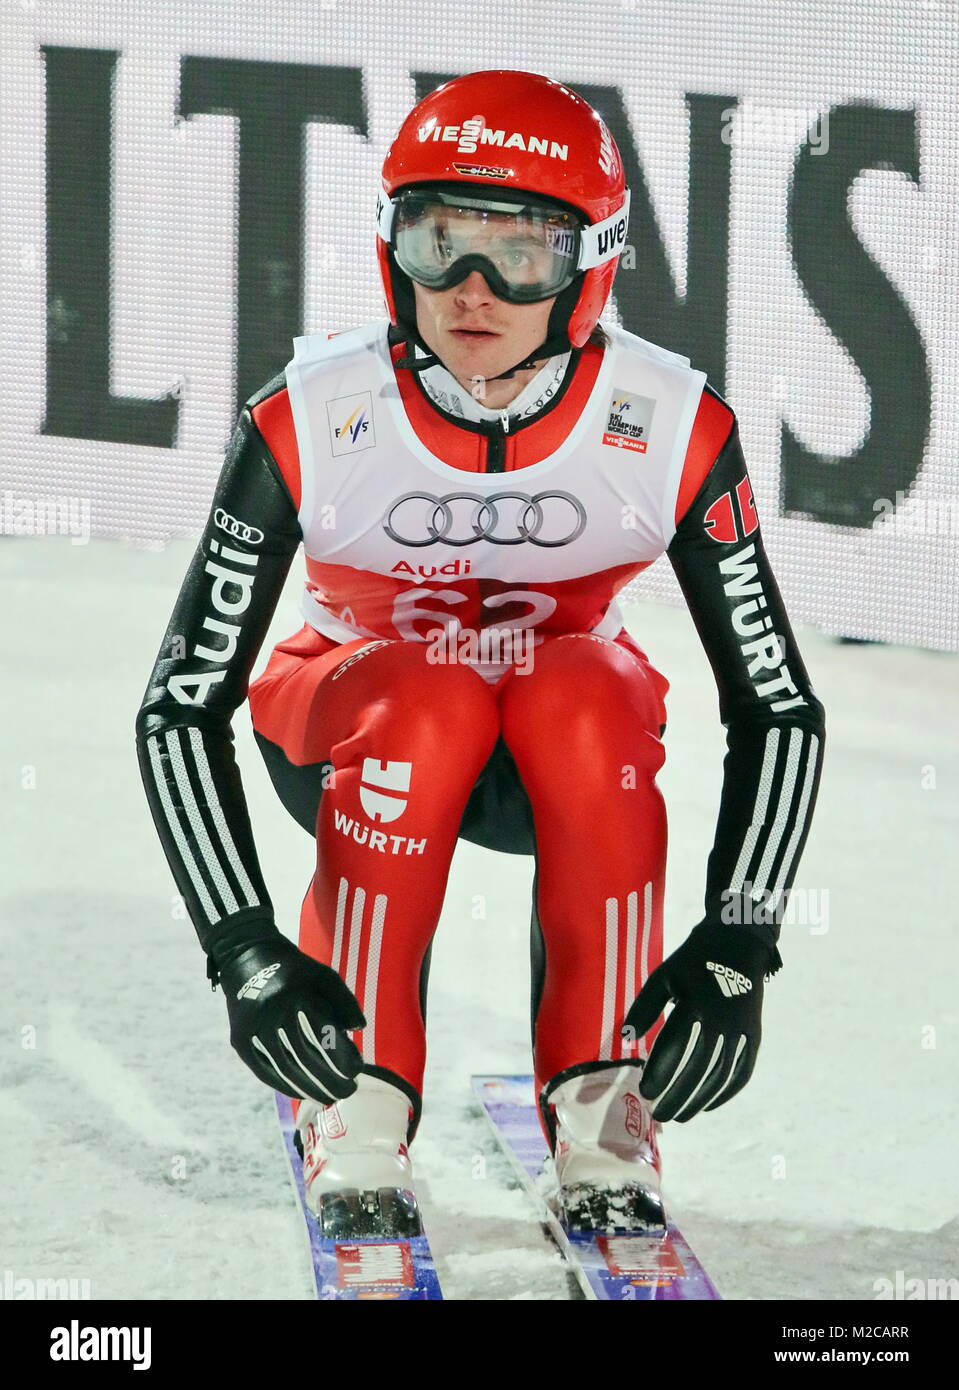 Richard Skispringer FREITAG bei der Qualifikation für 63. Vierschanzentournee Auftaktspringen Oberstdorf Foto de stock